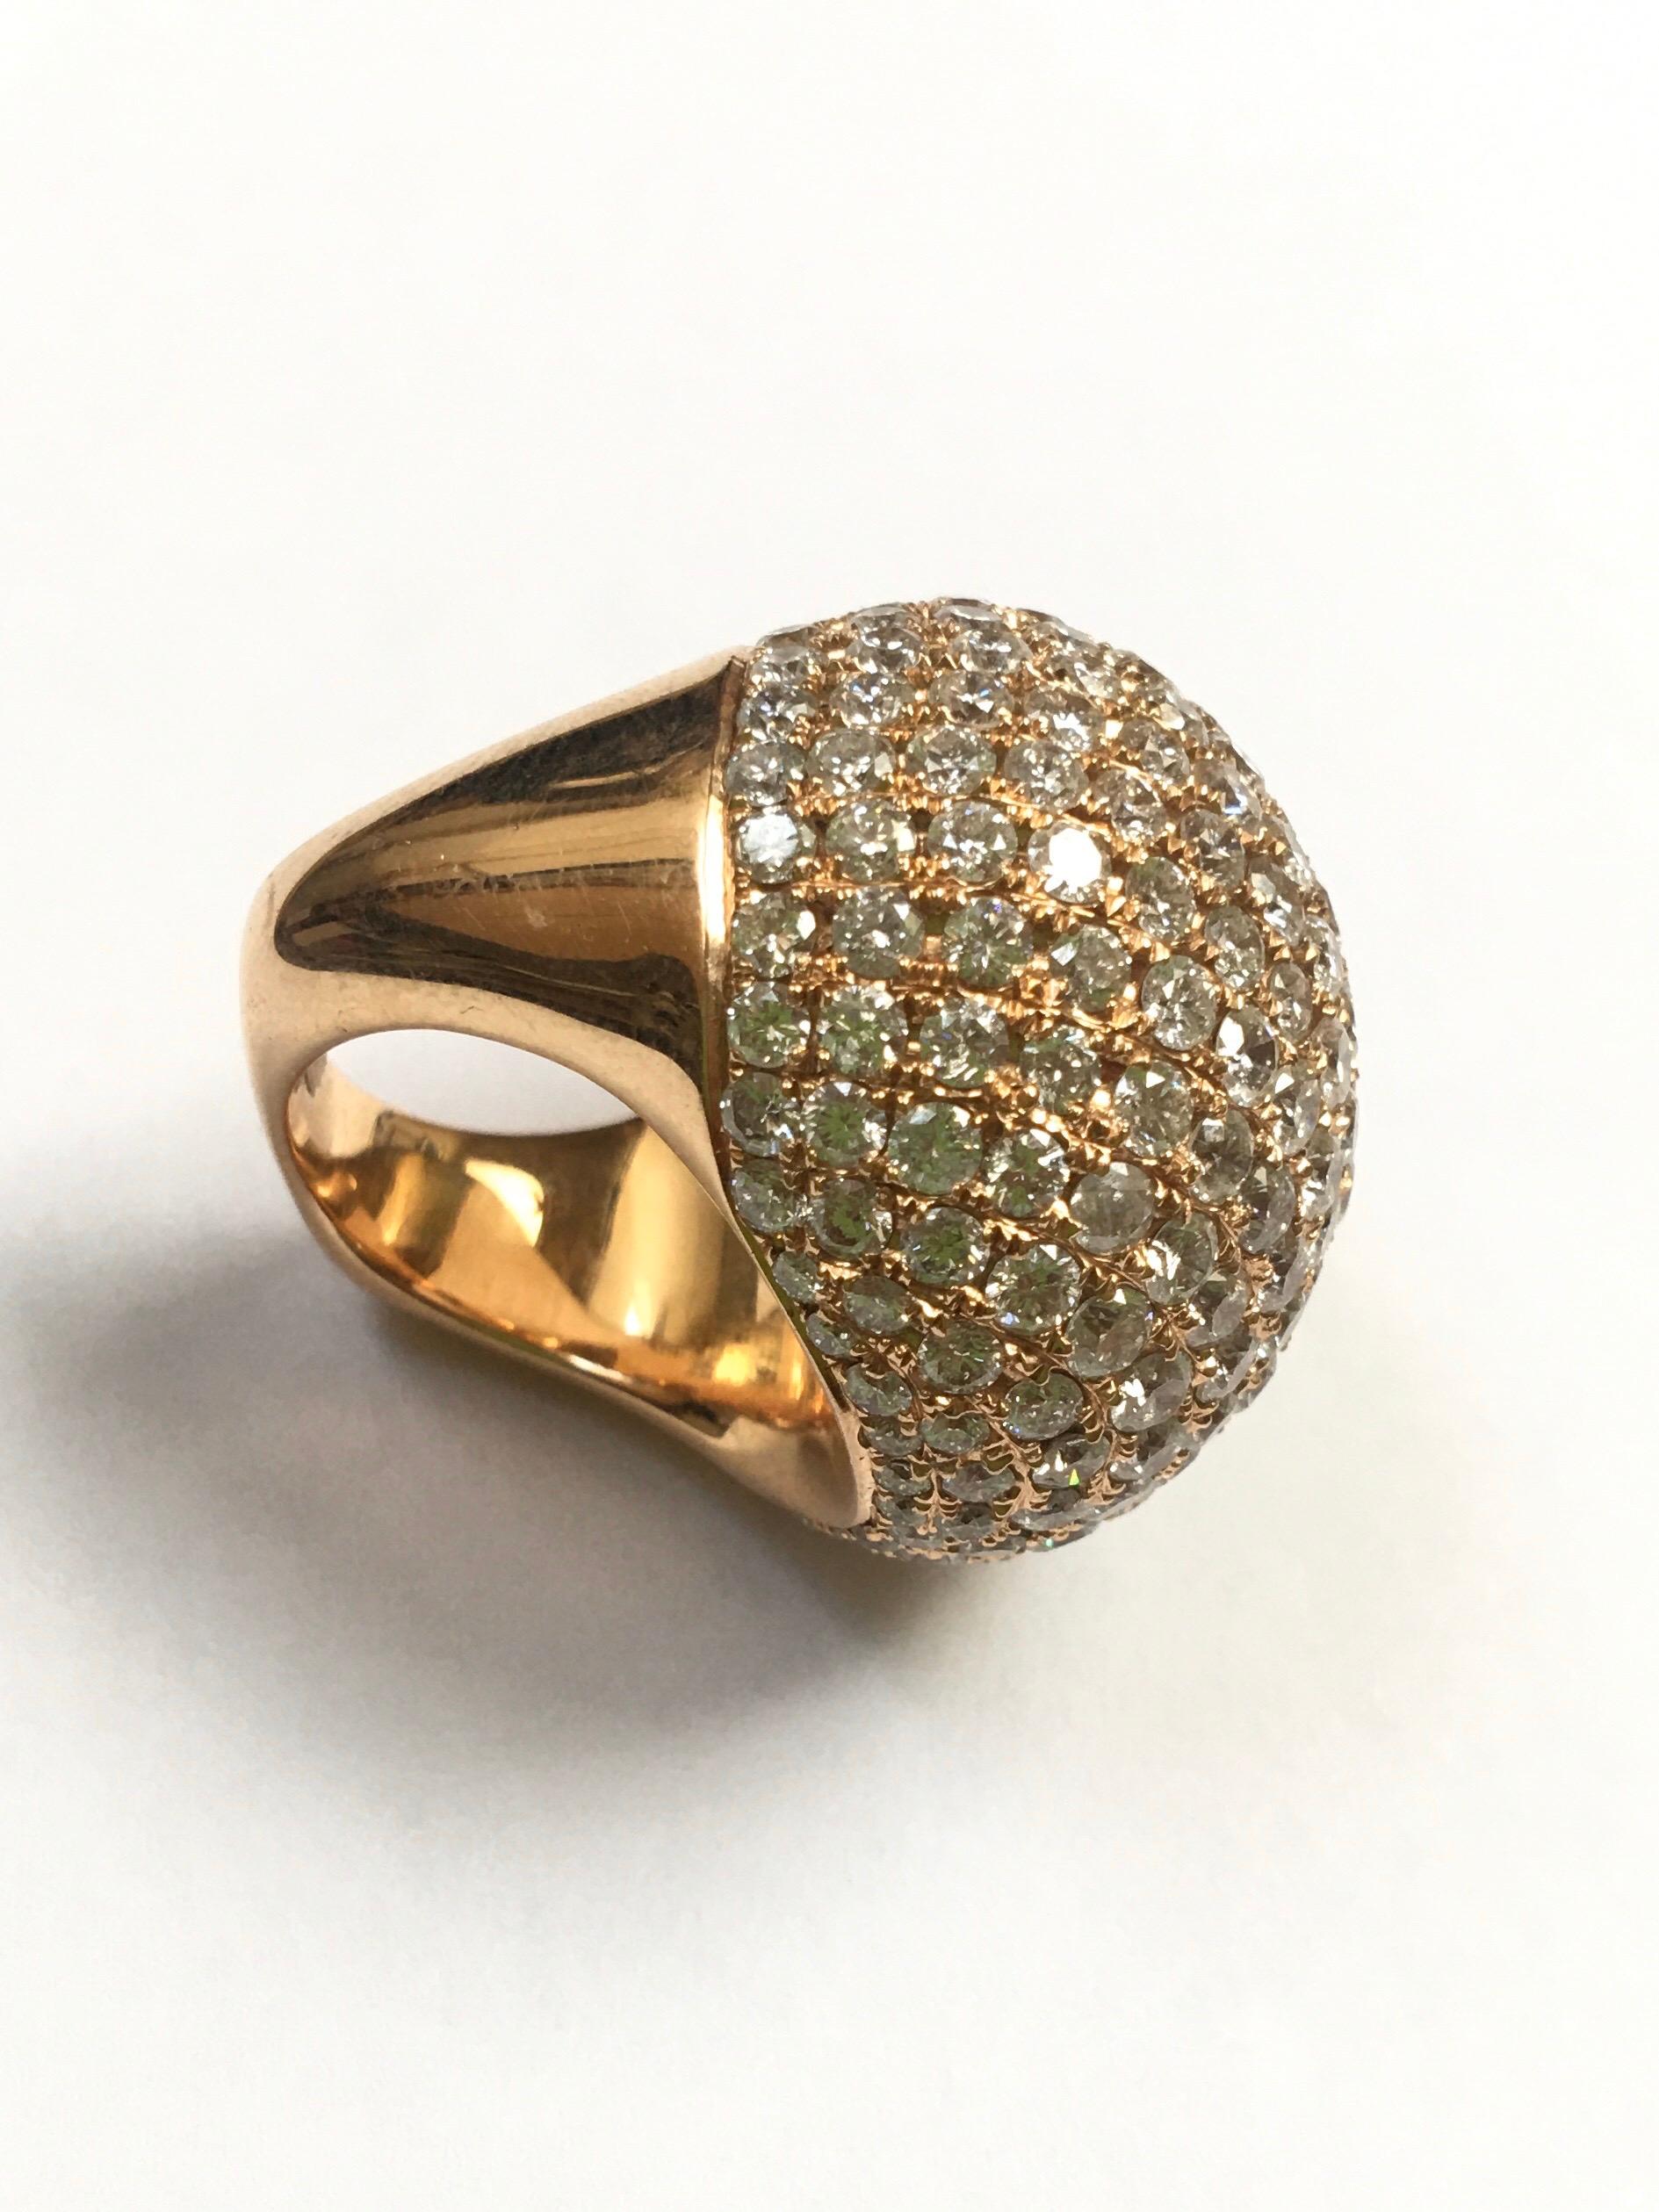 13.79 Carat Round Cut Diamond Bombe Ring in 18 Karat Rose Gold For Sale 1